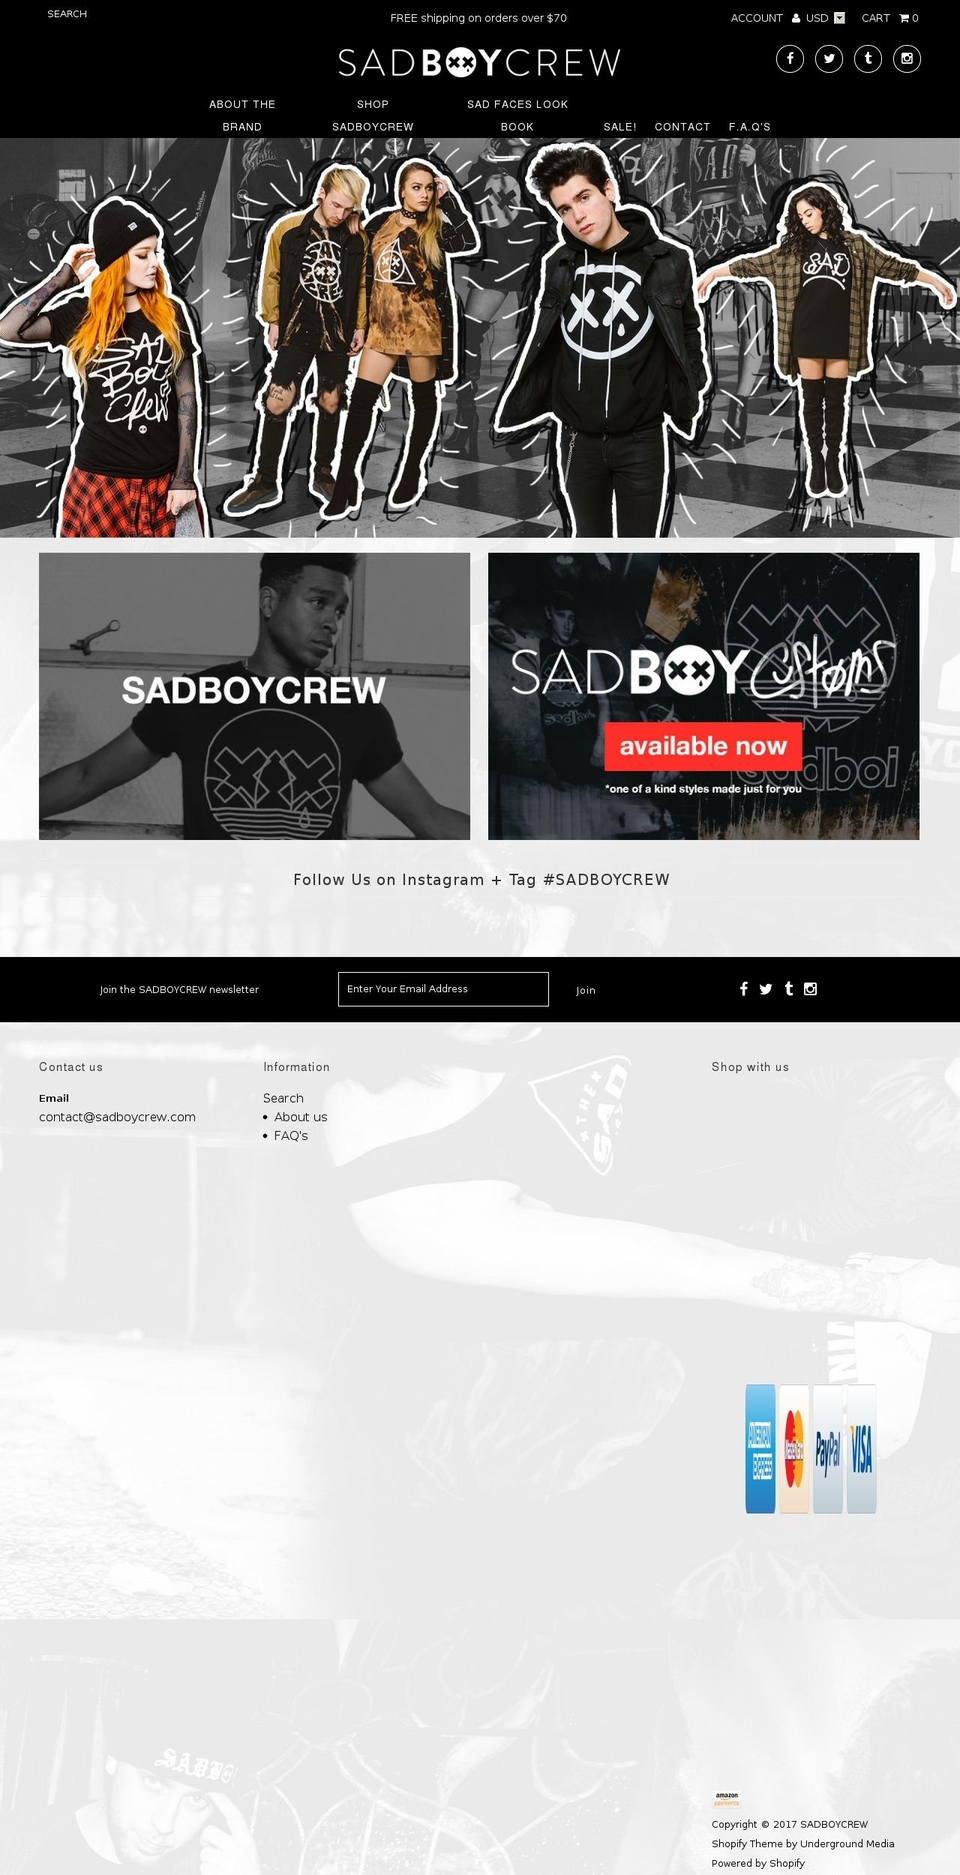 boundless Shopify theme site example sadboycrew.com